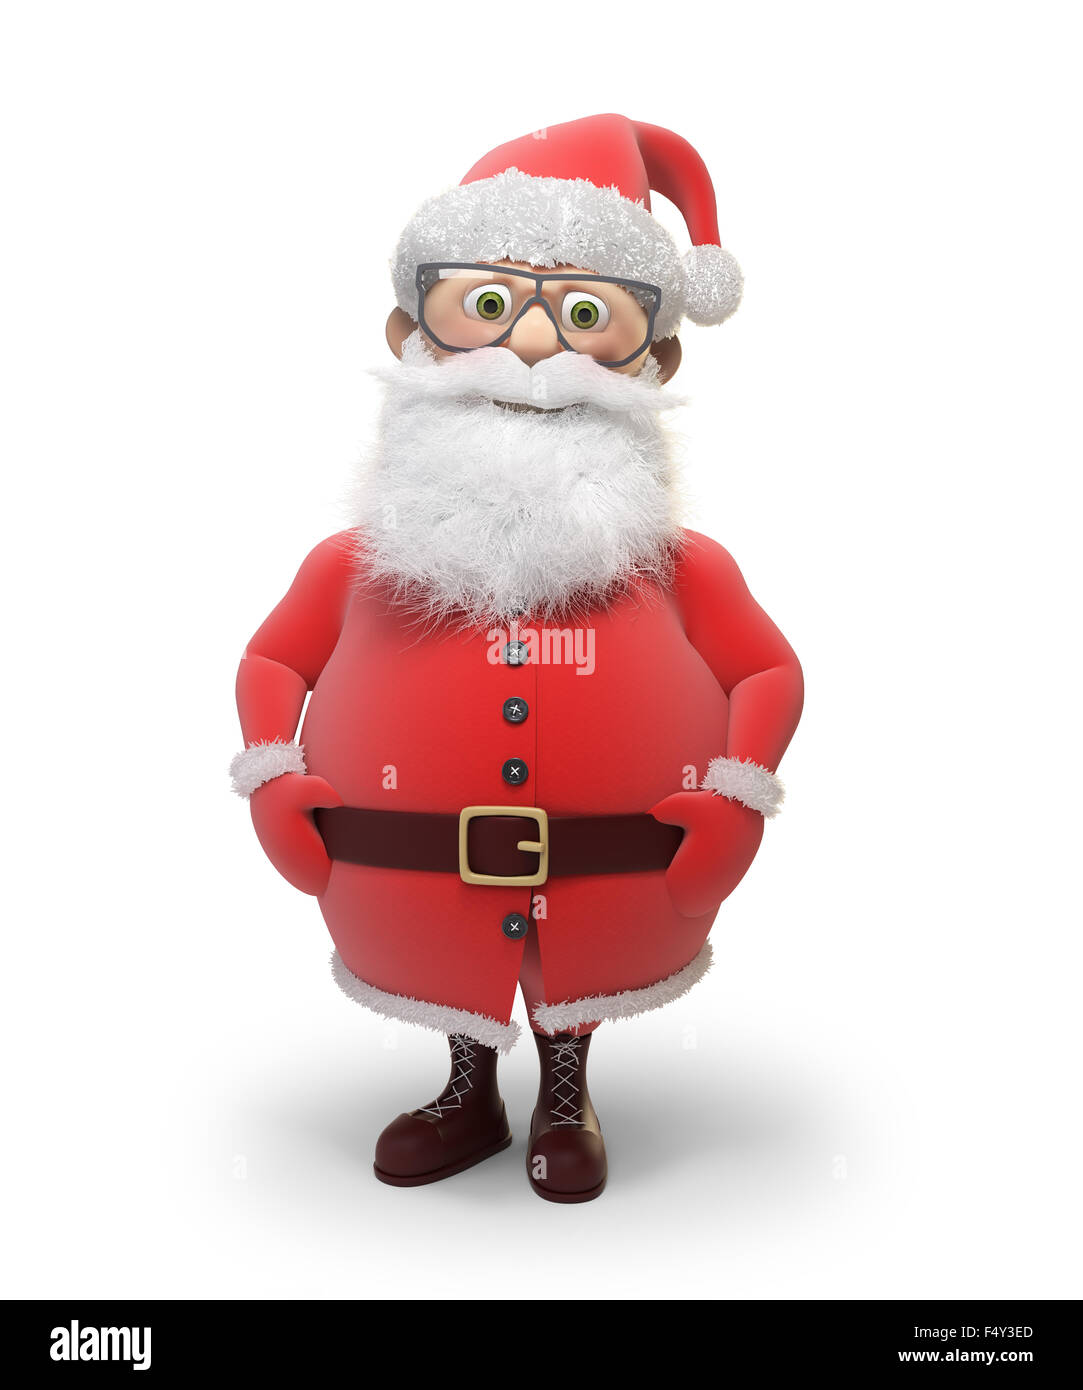 Santa Claus - caractère stylisé background illustration de Noël Banque D'Images